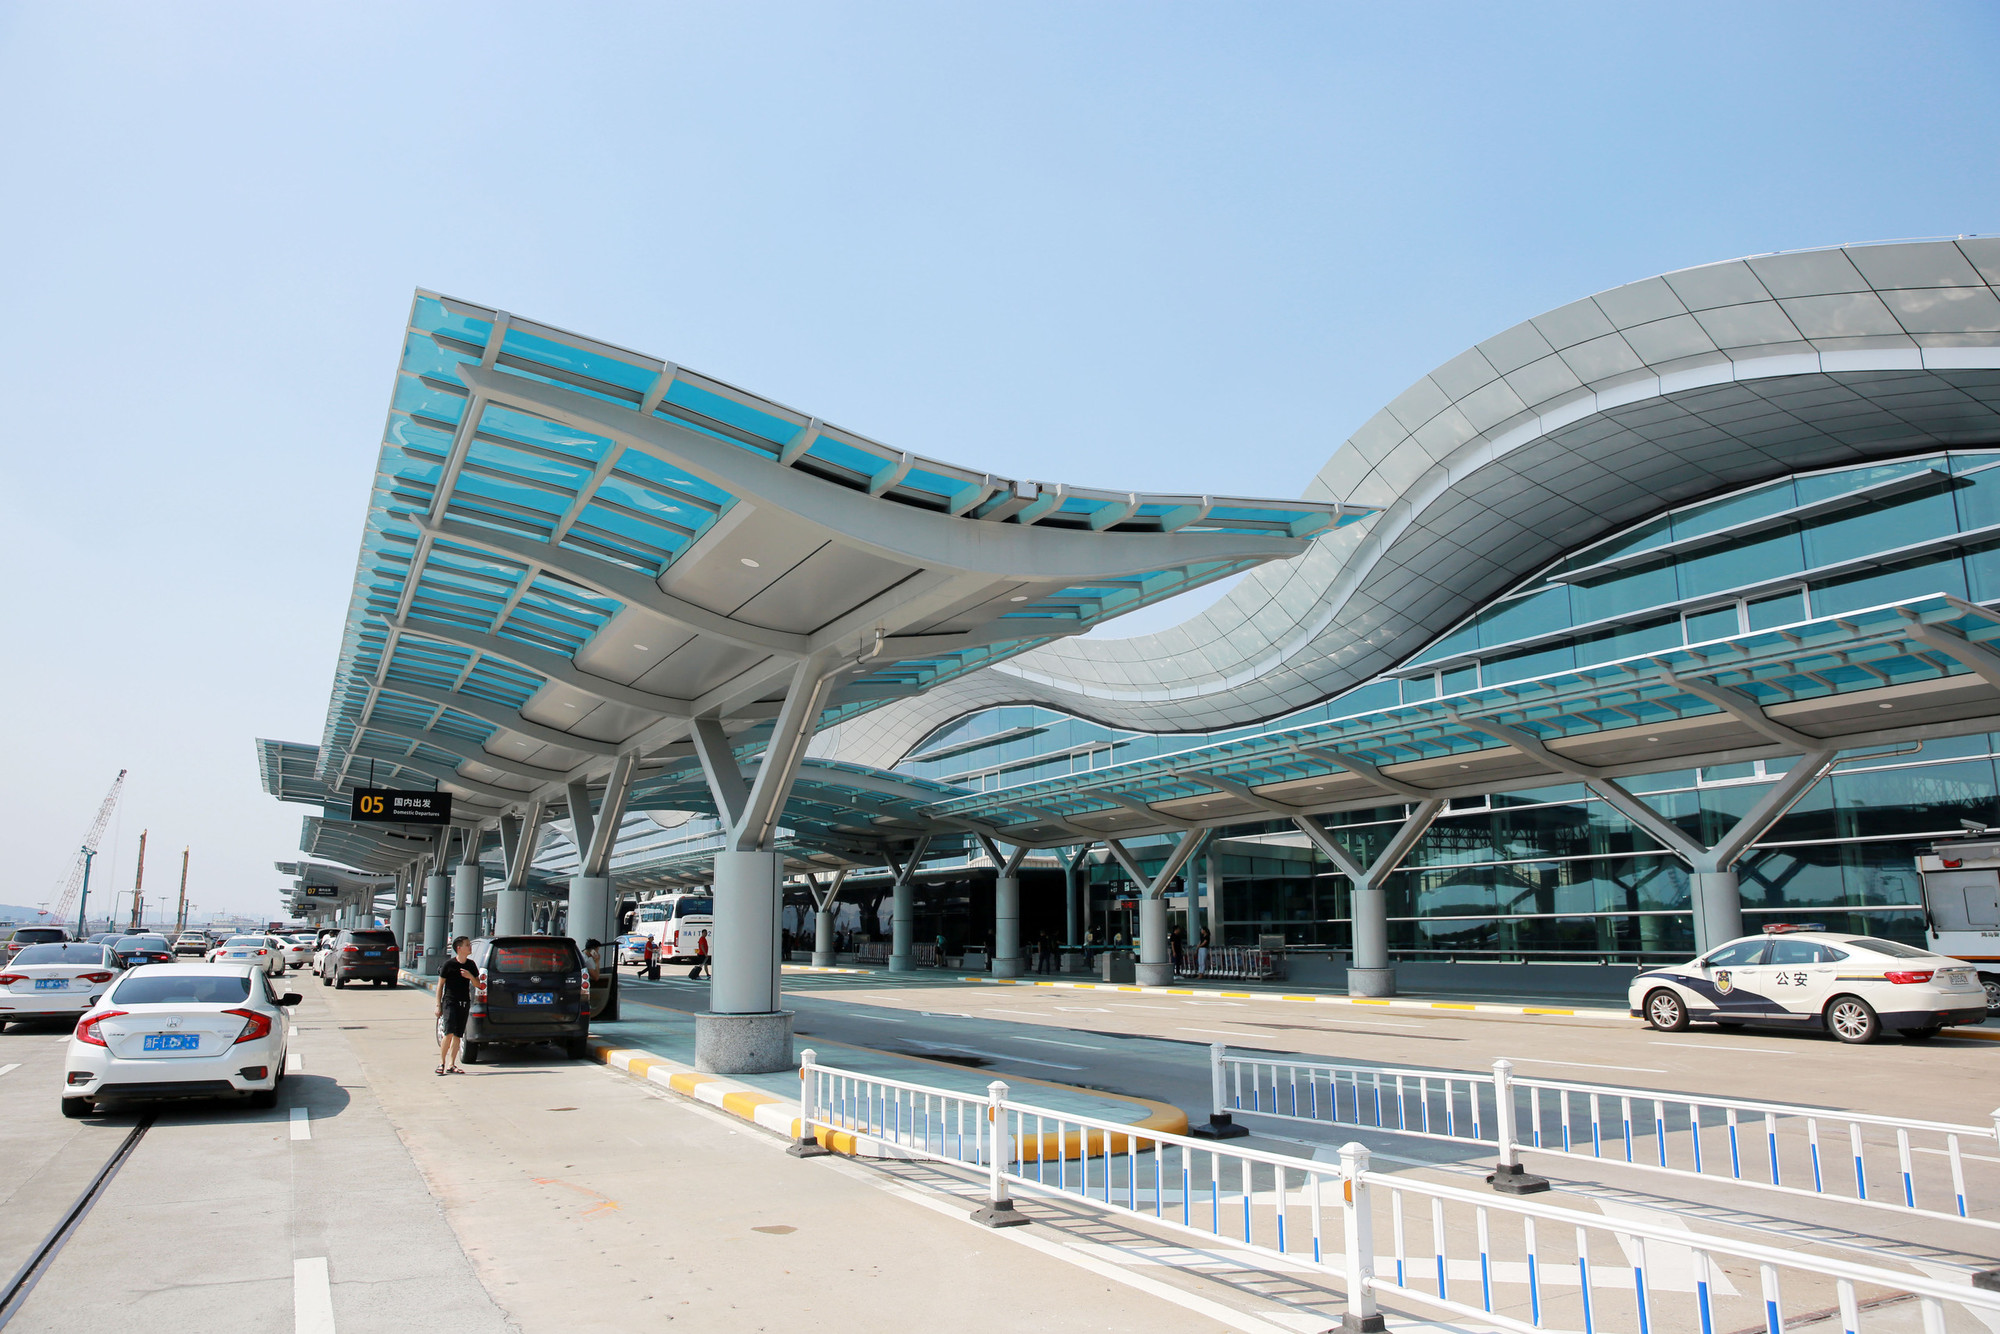 杭州萧山国际机场新建航站楼设计方案获批